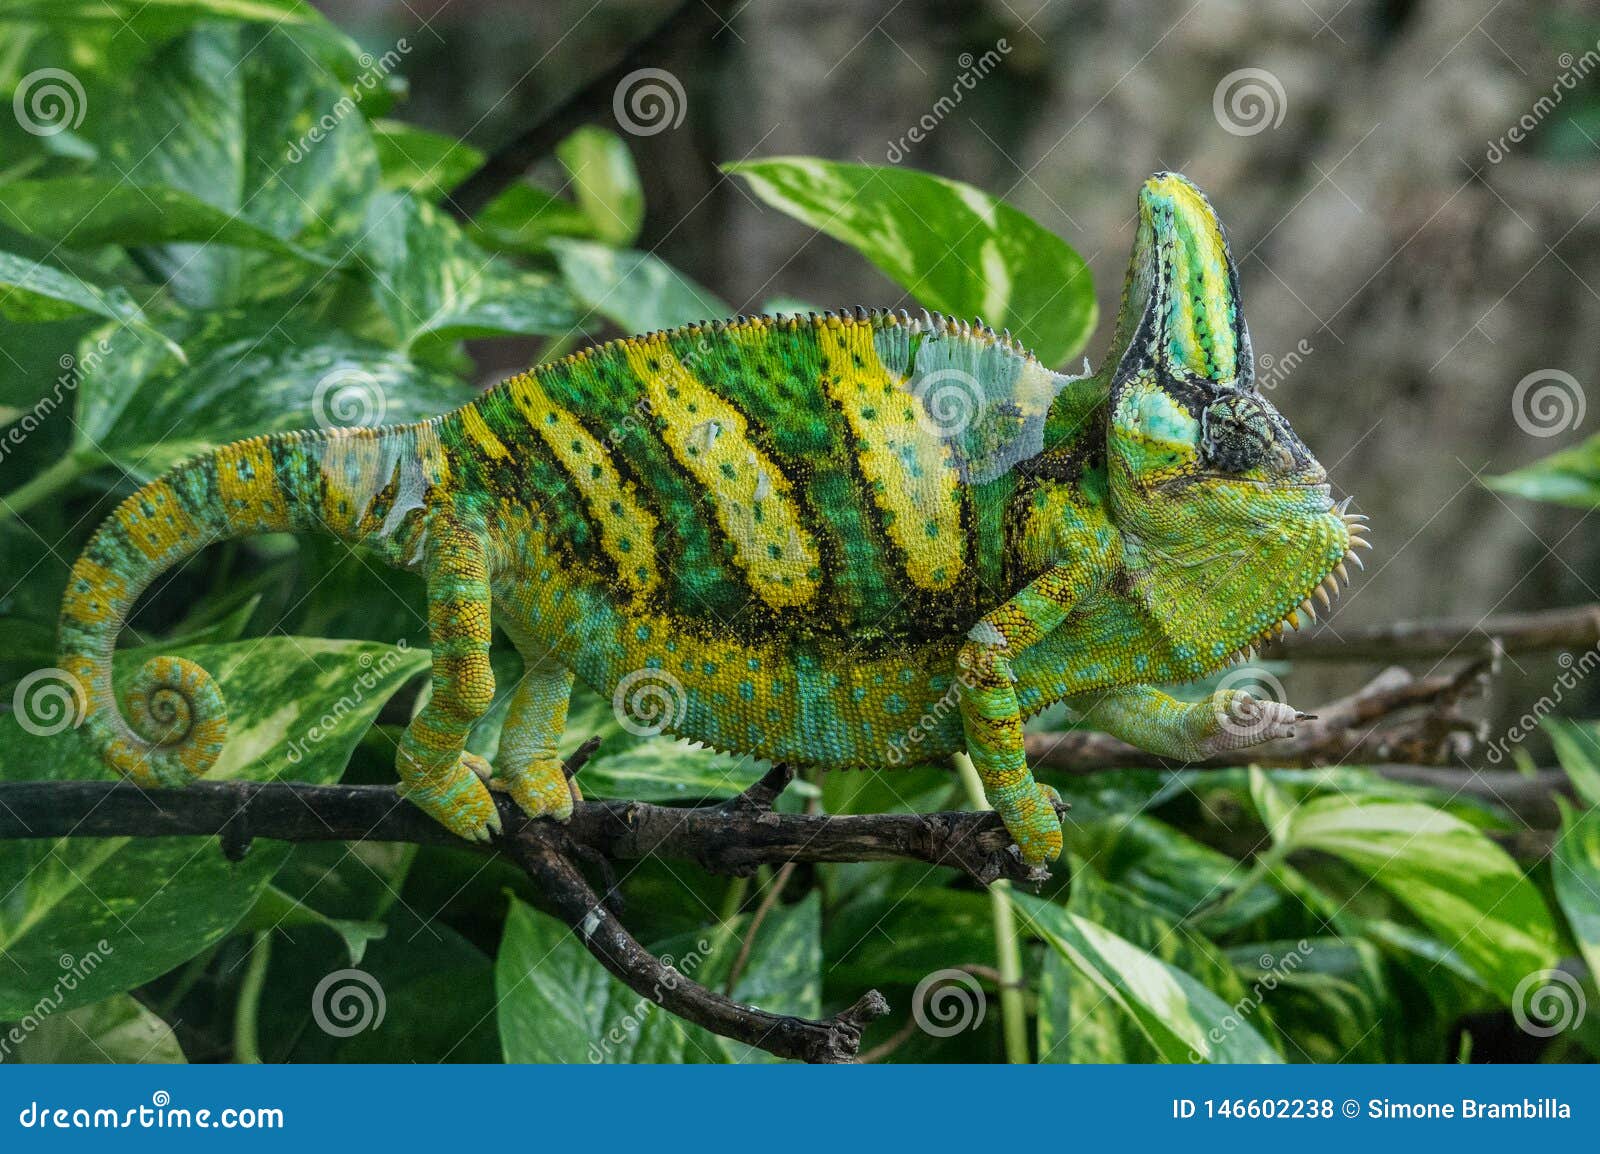 Grande Camaleonte Di Colore Verde E Giallo Fotografia ...